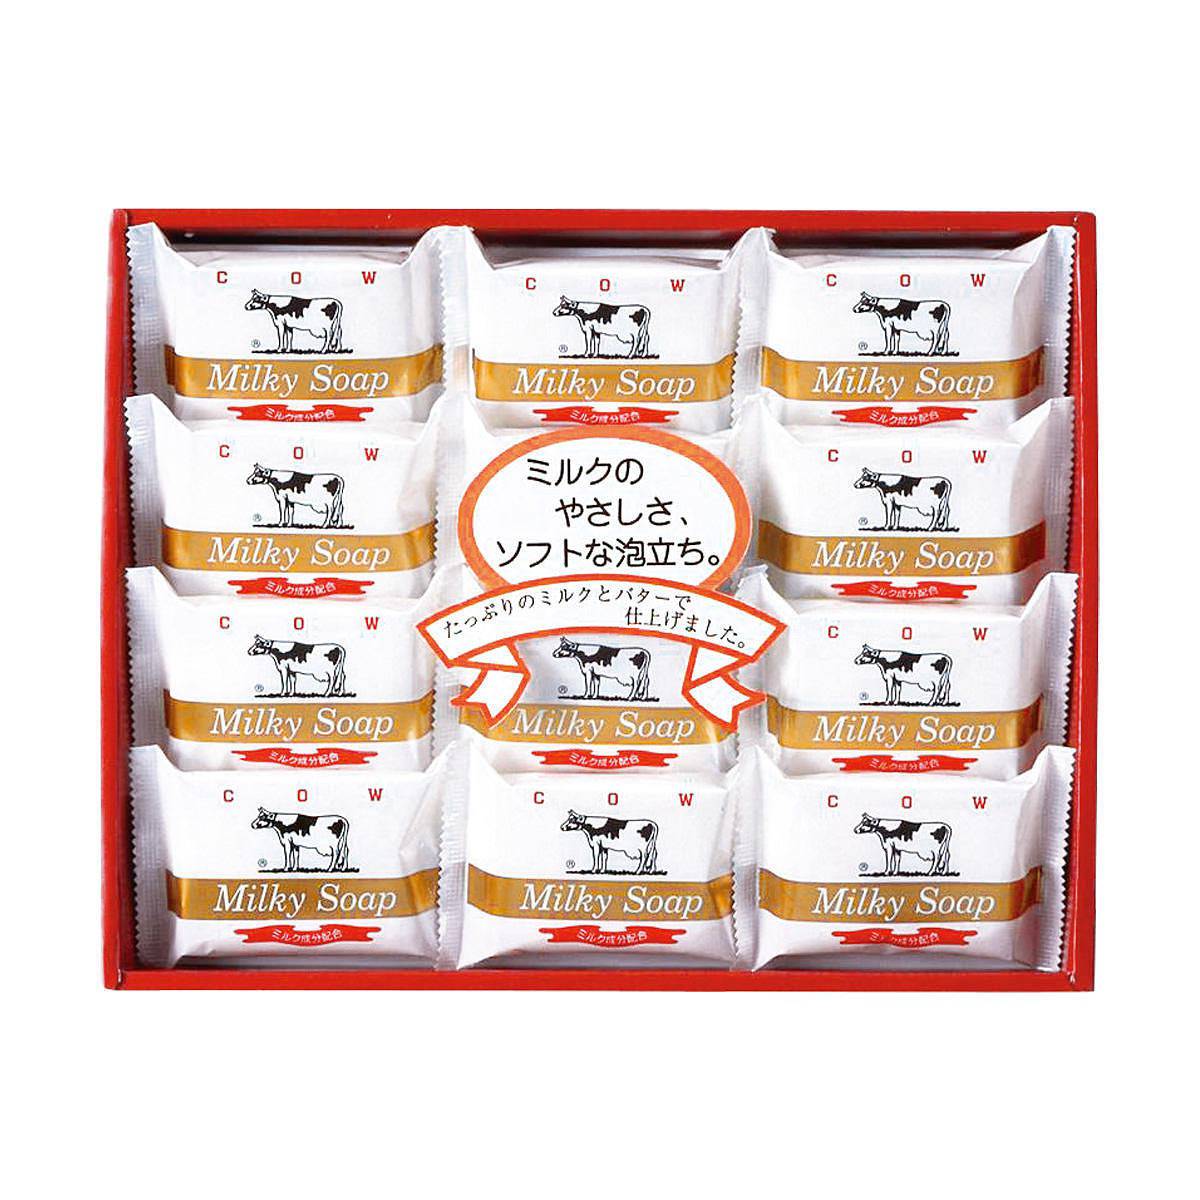 老舗ブランドのプレミアムシリーズ 牛乳石鹸 ゴールドソープセット AG-15M お菓子の詰め合わせの様なギフト専用シリーズ スマートギフト